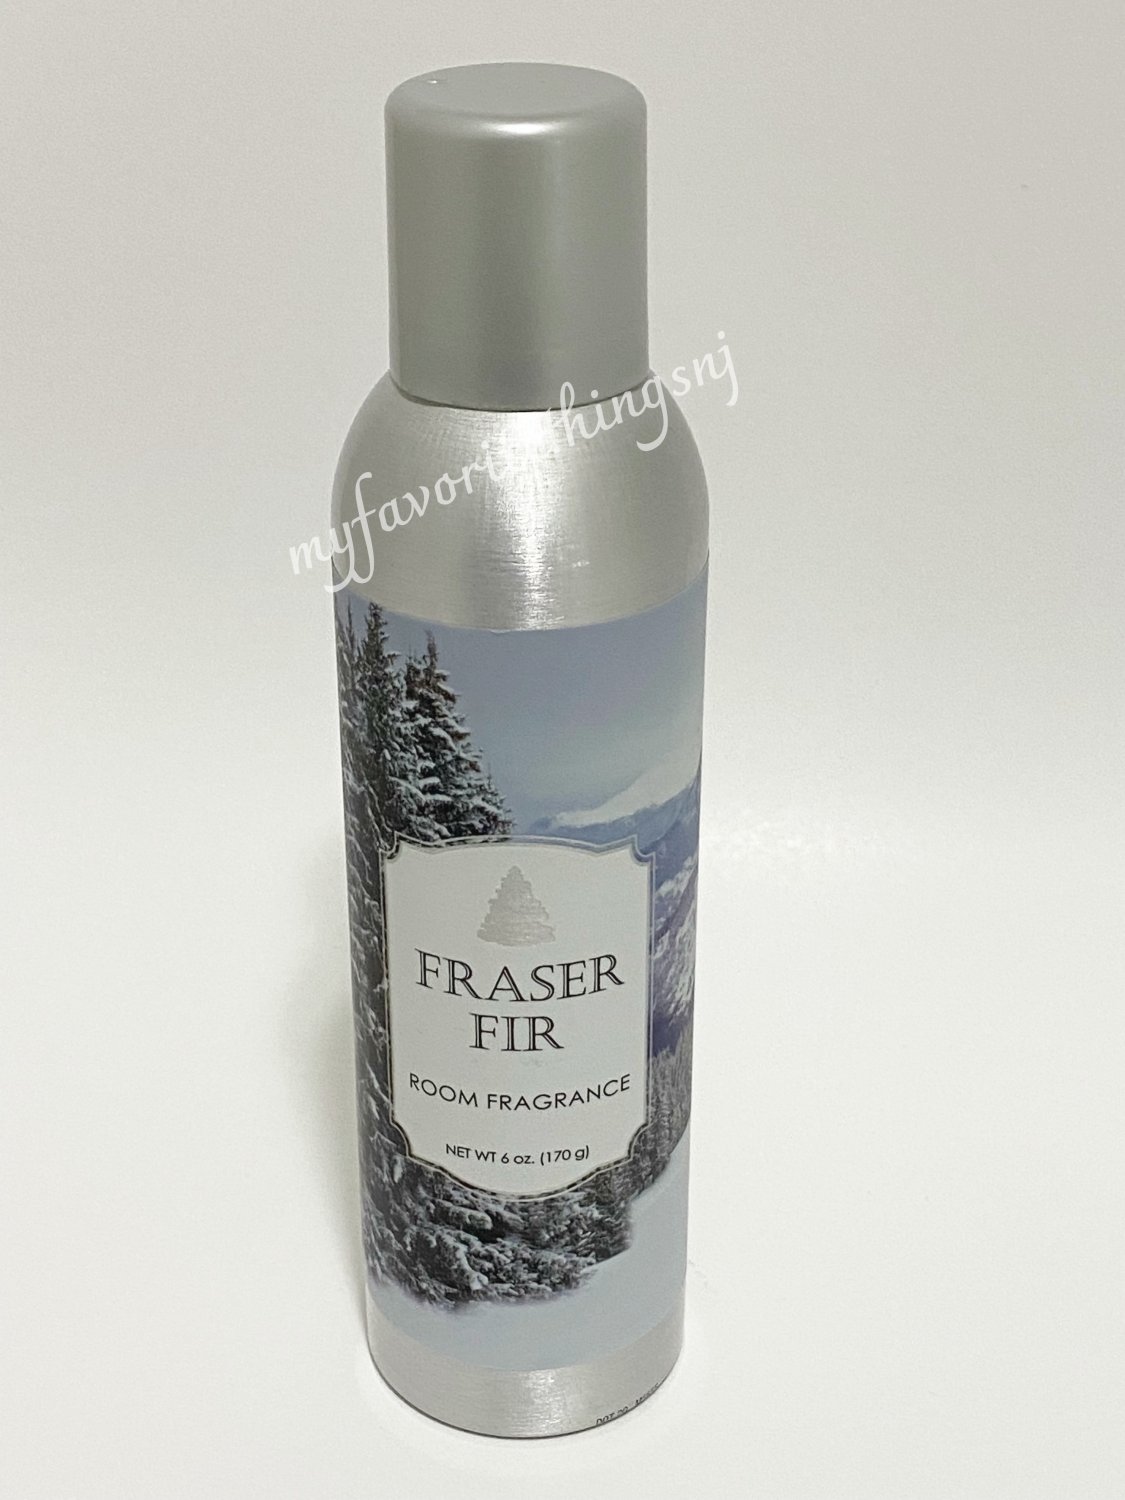 AP Fragrance Frasier Fir Room Spray 6 oz